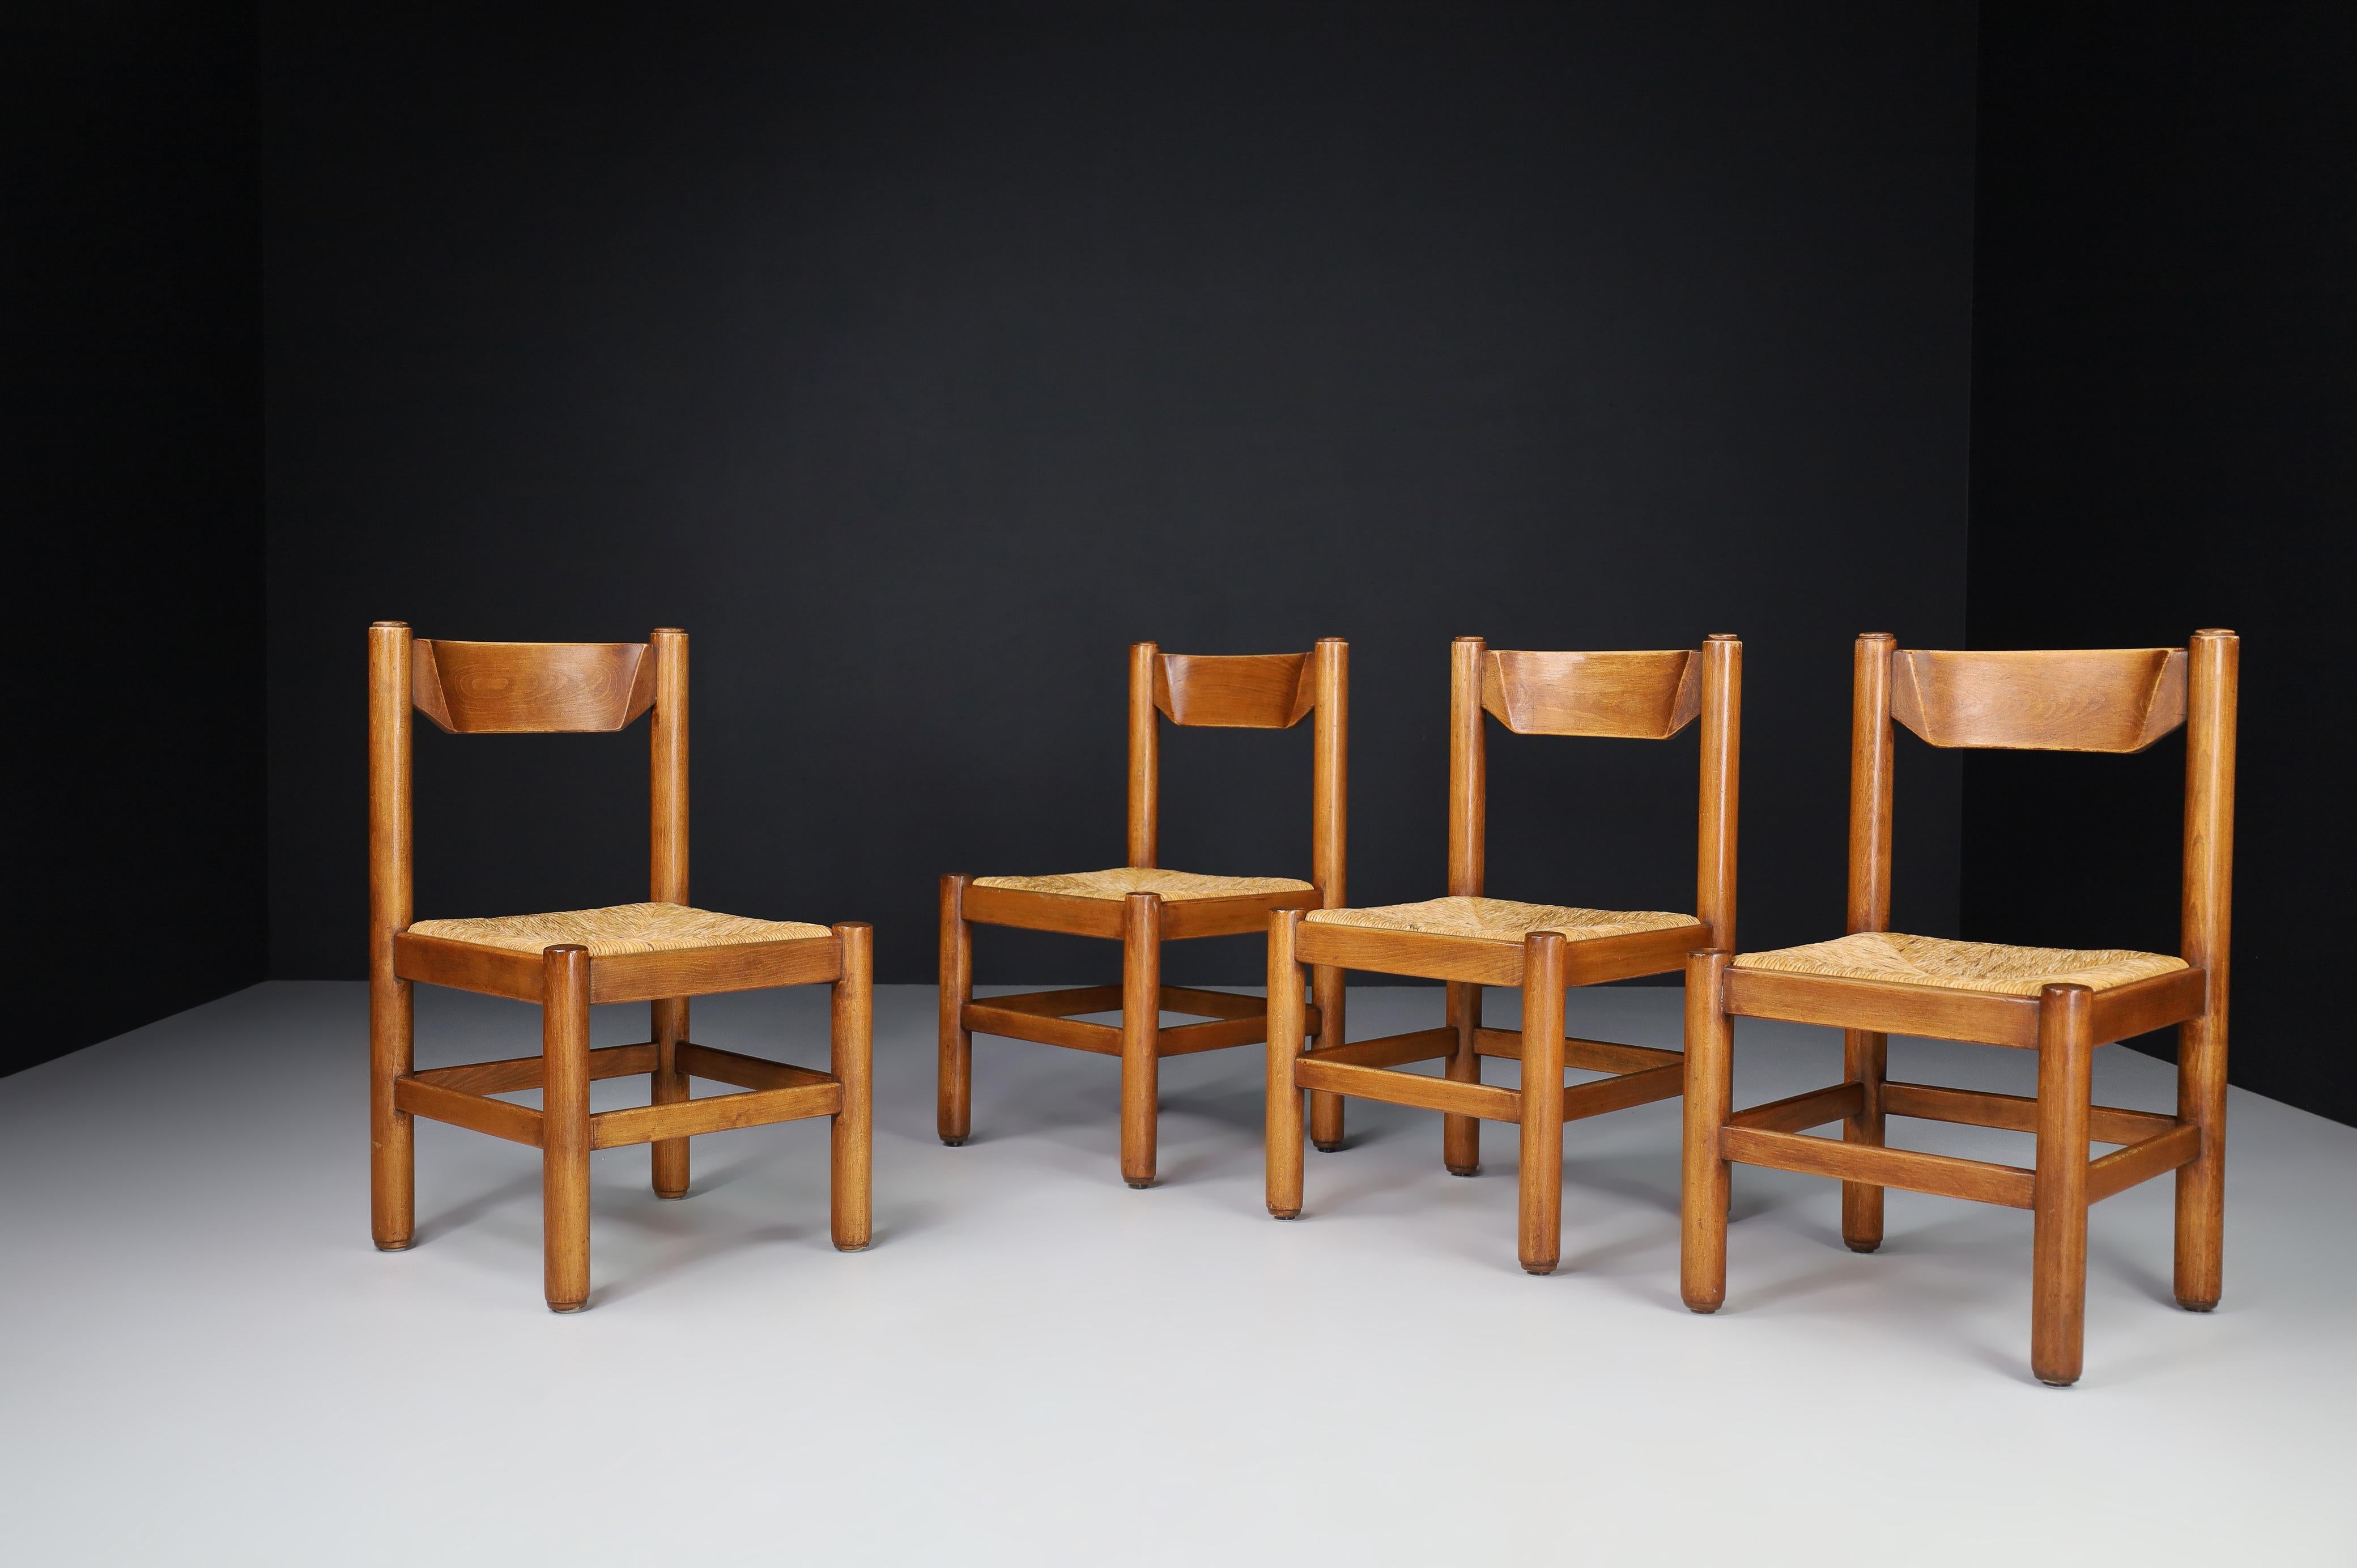 Paar von vier Stühlen aus Eiche und Binsen im Stil von Charlotte Perriand, Frankreich, 1960er Jahre. 

Diese massiven Eichenstühle weisen eine schöne natürliche Patina auf und sind in einem hervorragenden Originalzustand. Diese Stühle sind ein